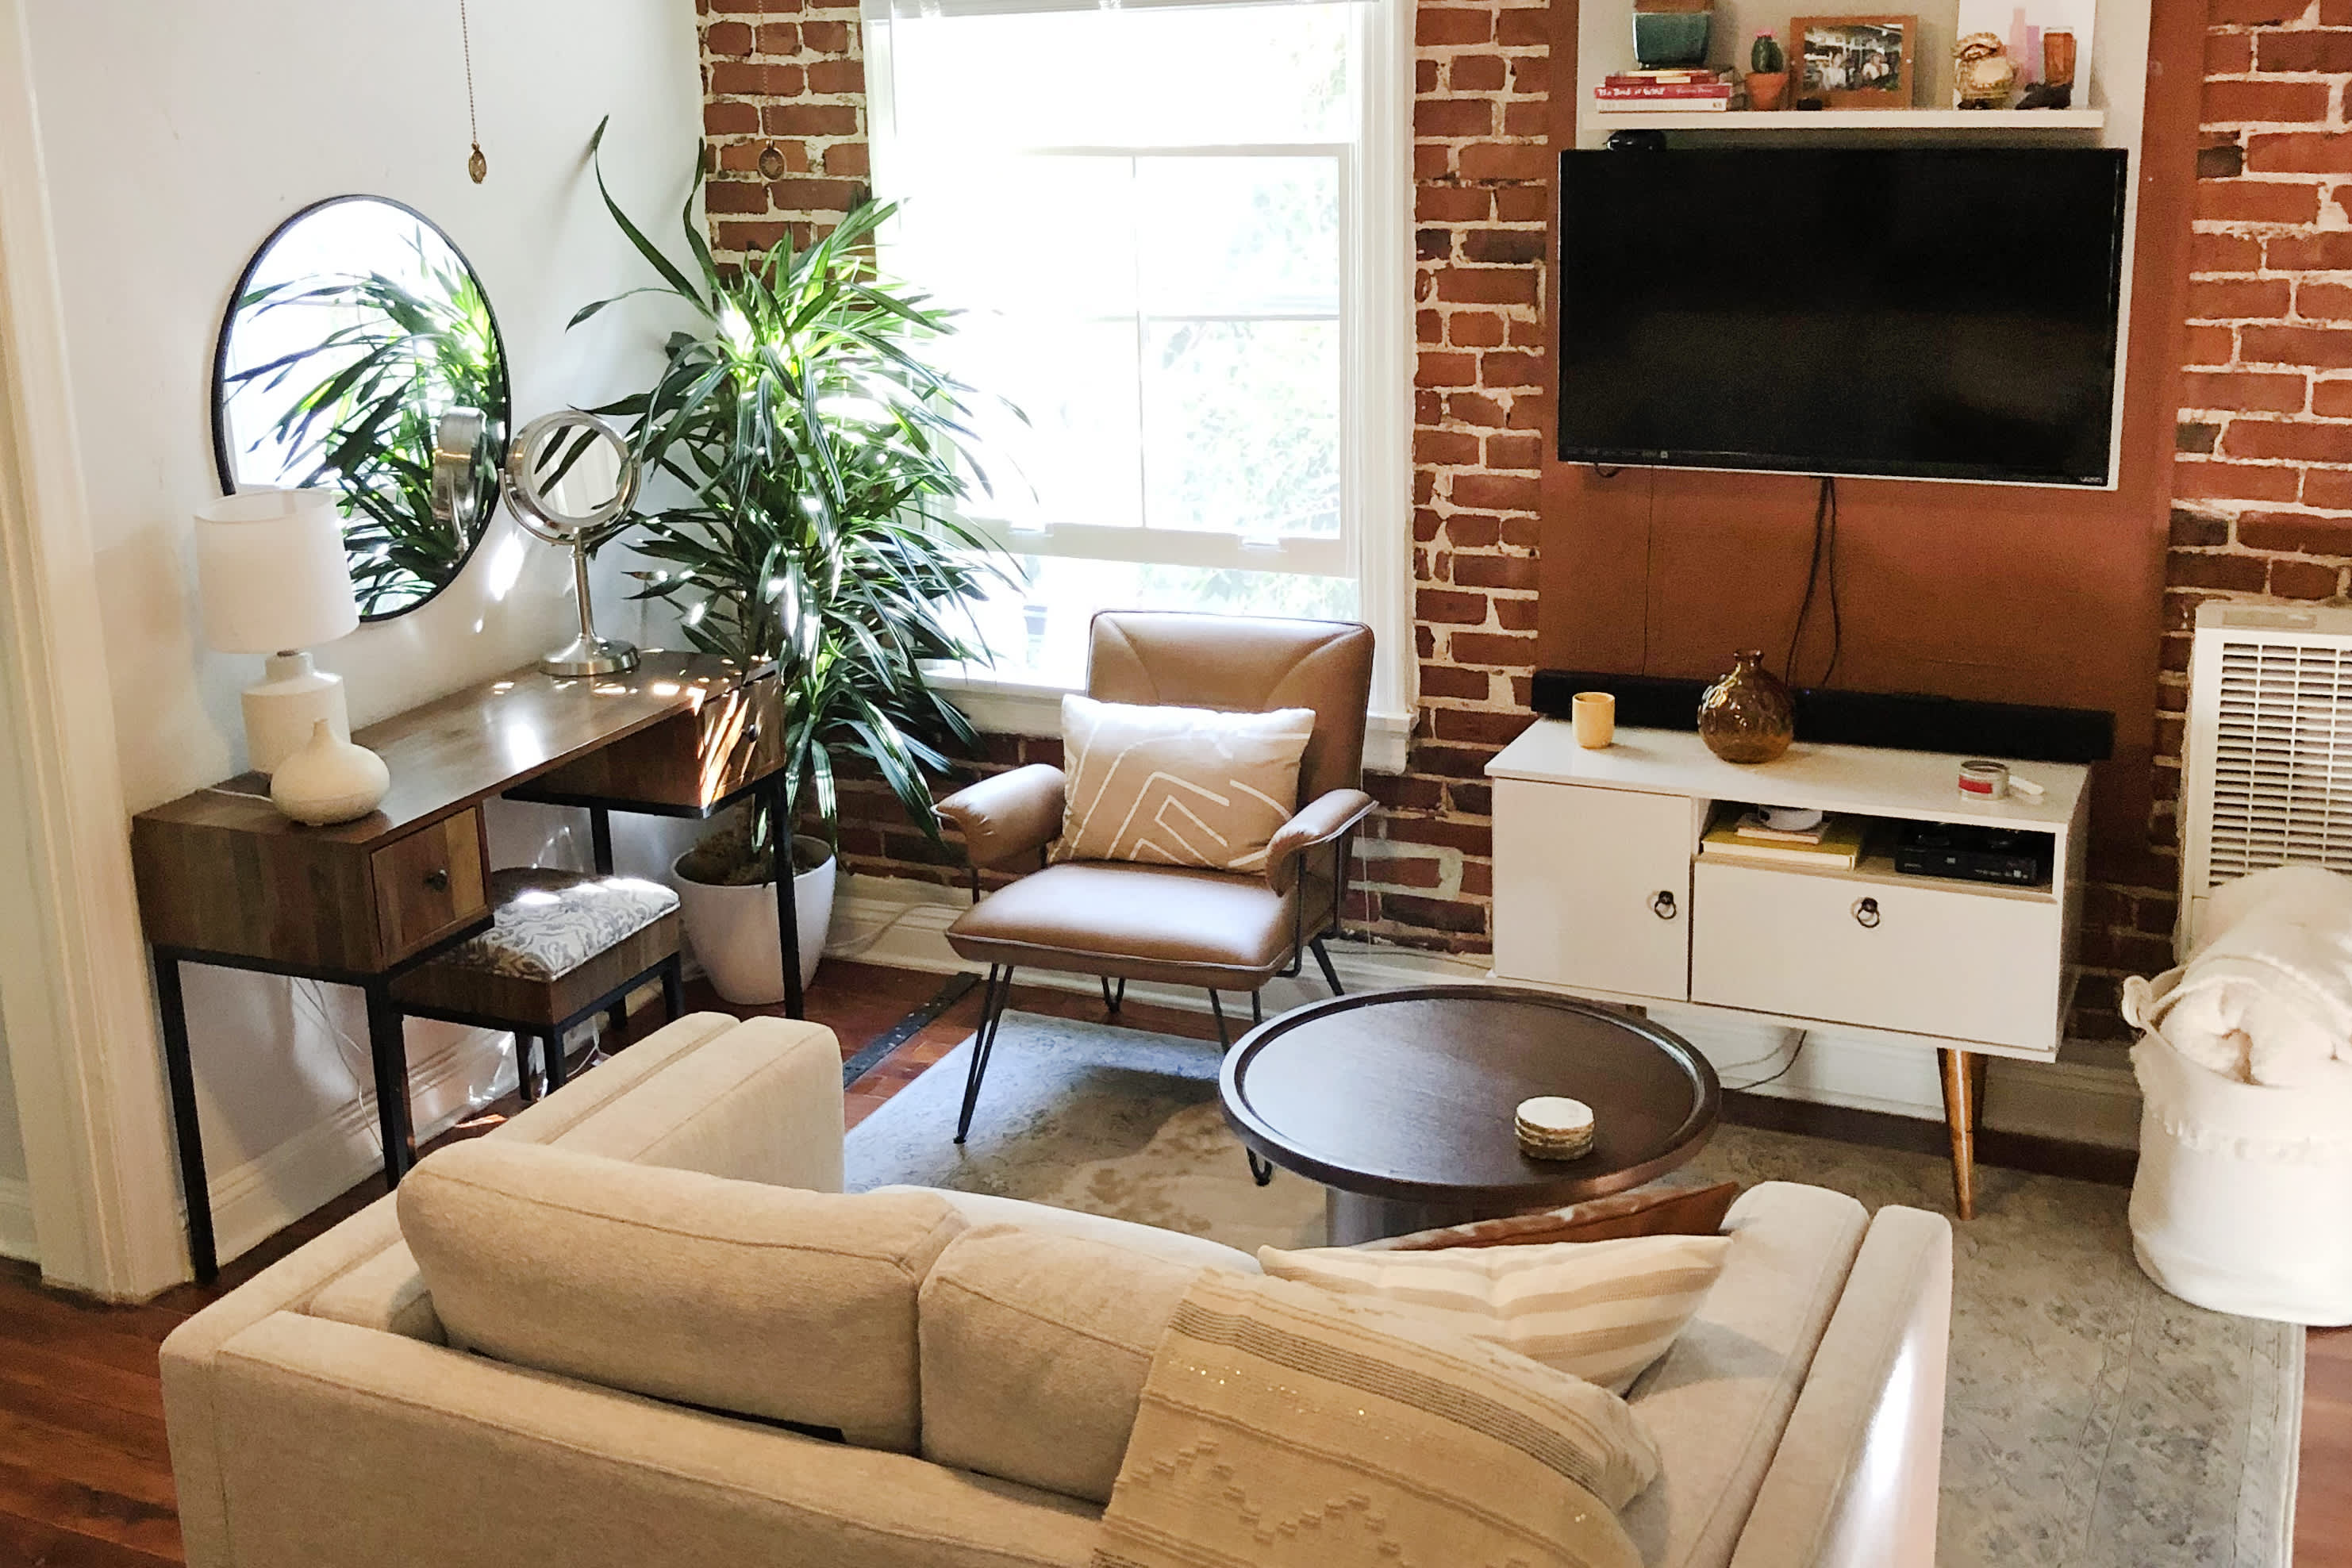 How Caroline Creates Elegant Outdoor Living Spaces – DIANI